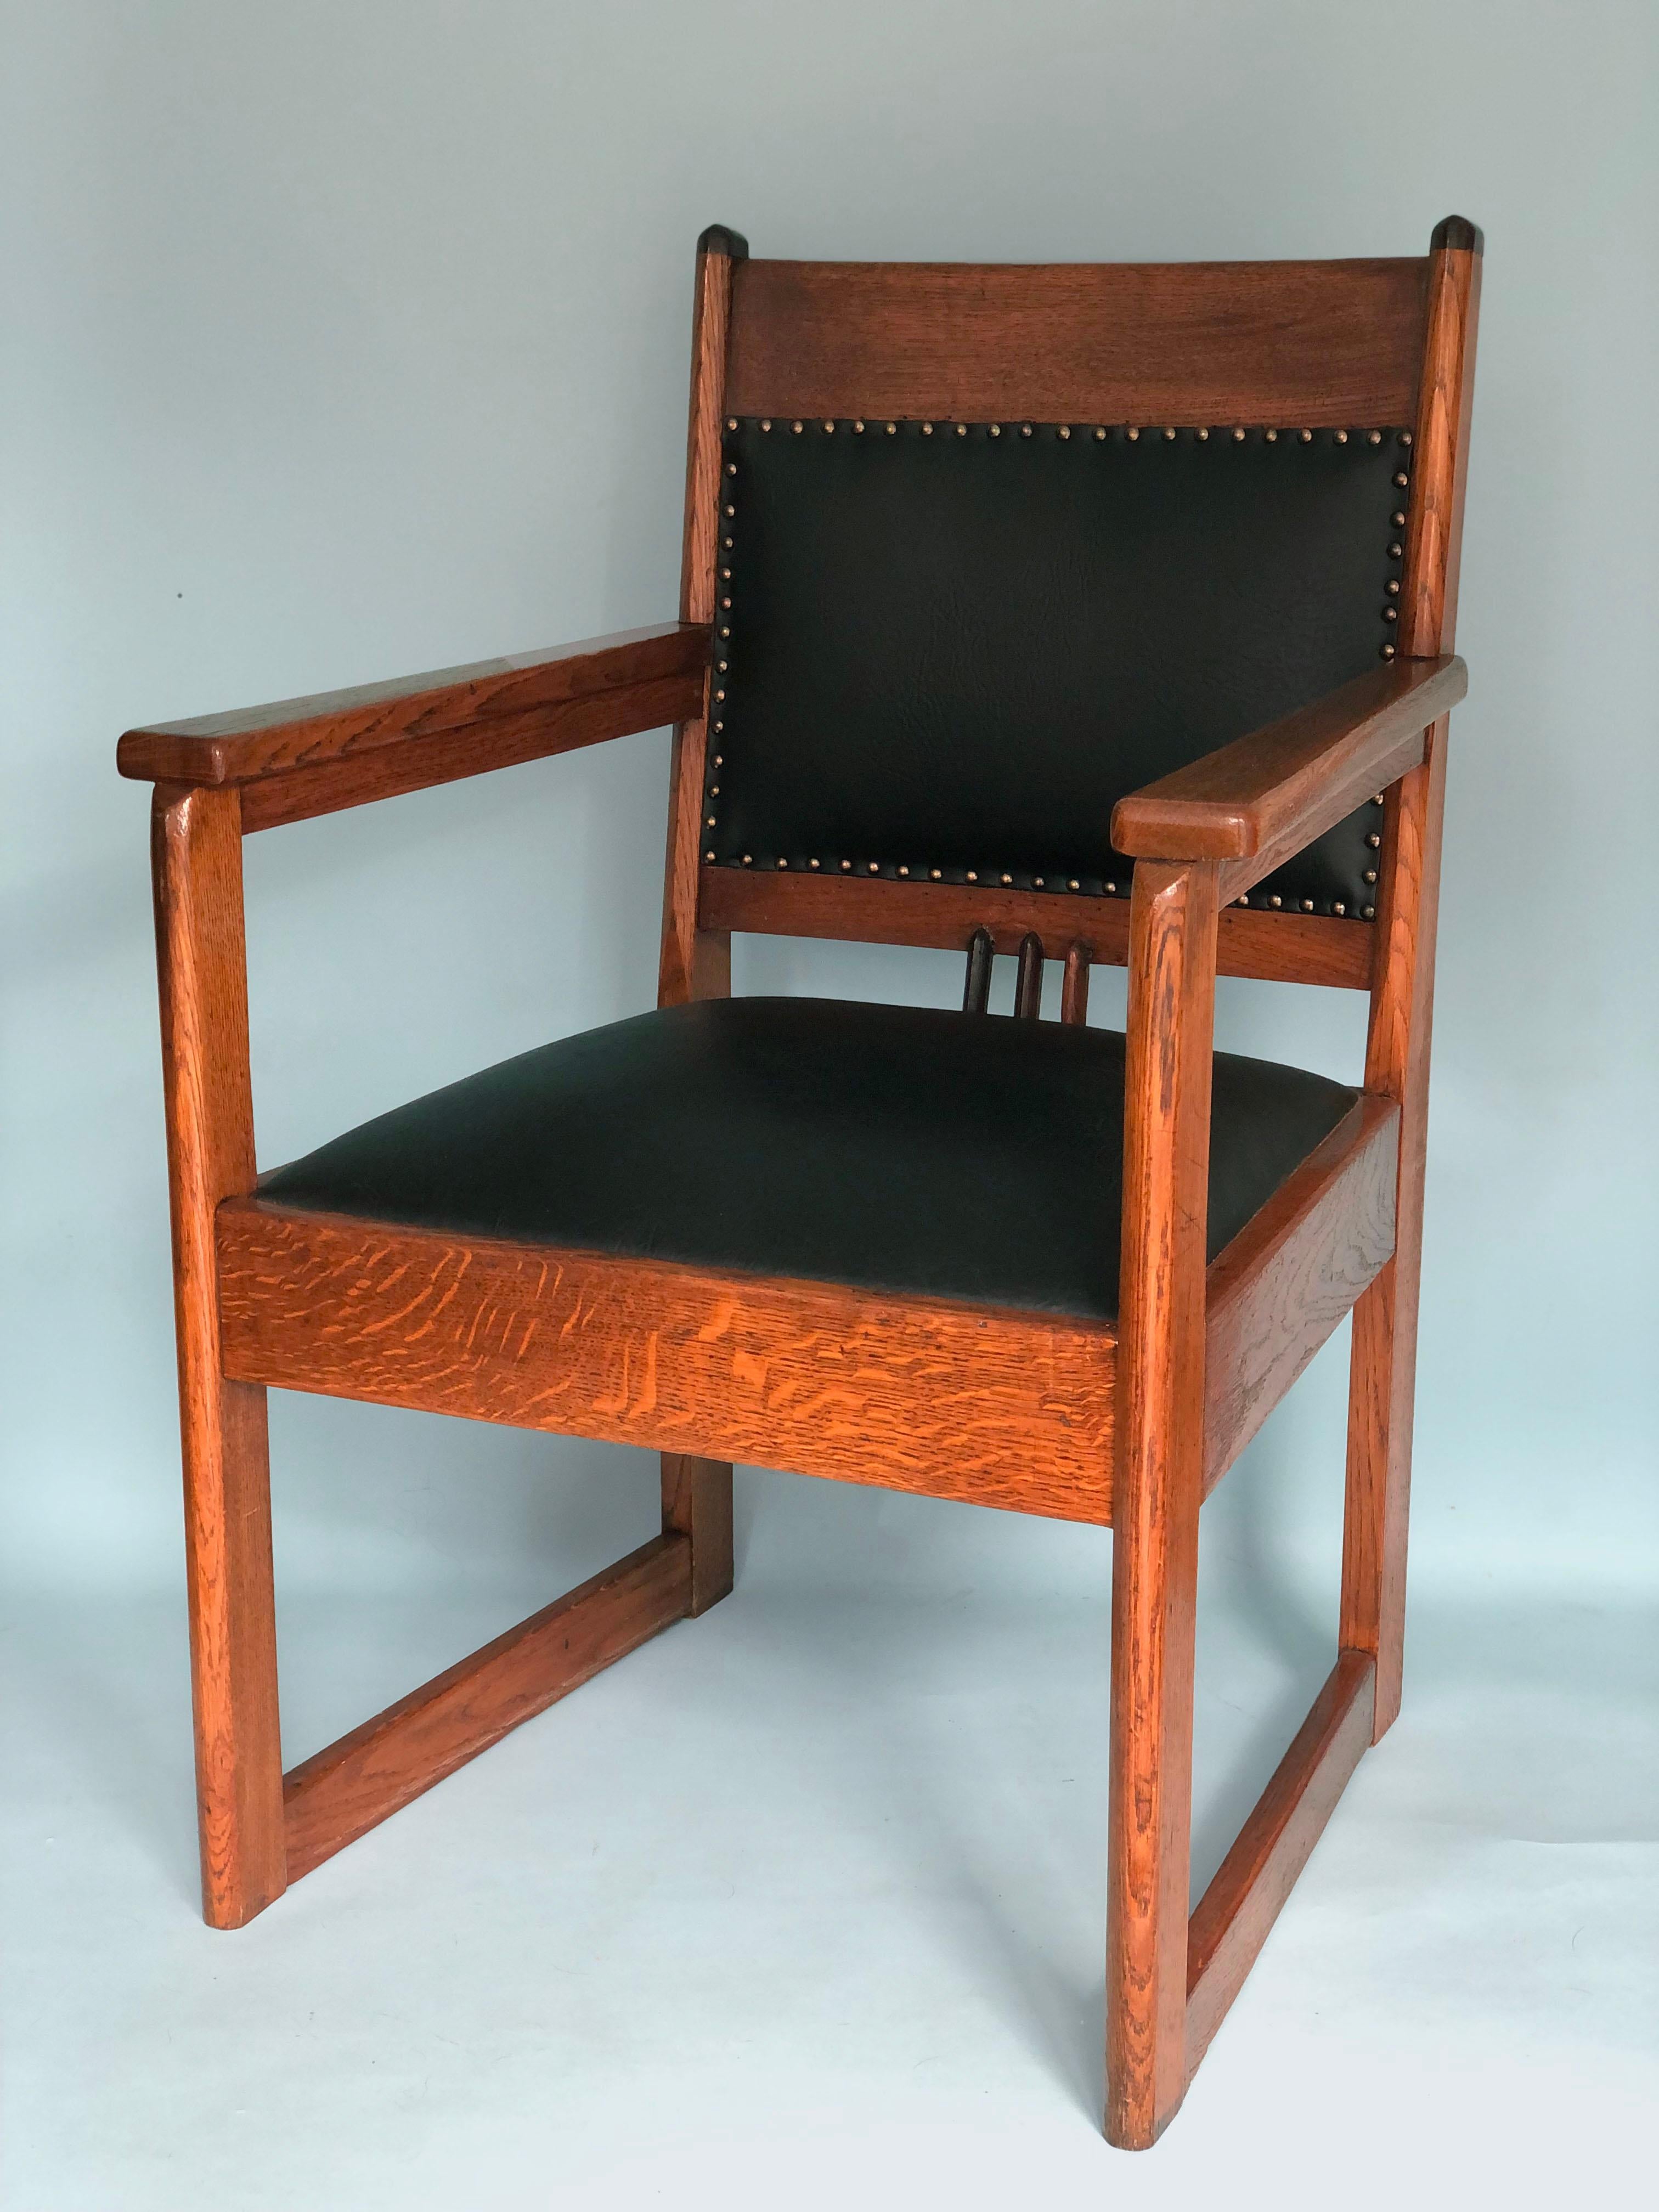 2 Art-Déco-Sessel aus Eiche aus den 1920er Jahren. Entworfen und hergestellt in der Zeit der Haagse School, wahrscheinlich von Hendrik Wouda. Die schweren und stabilen Stühle sind in sehr gutem Zustand. Das Kunstleder an Sitz und Rückenlehne ist mit